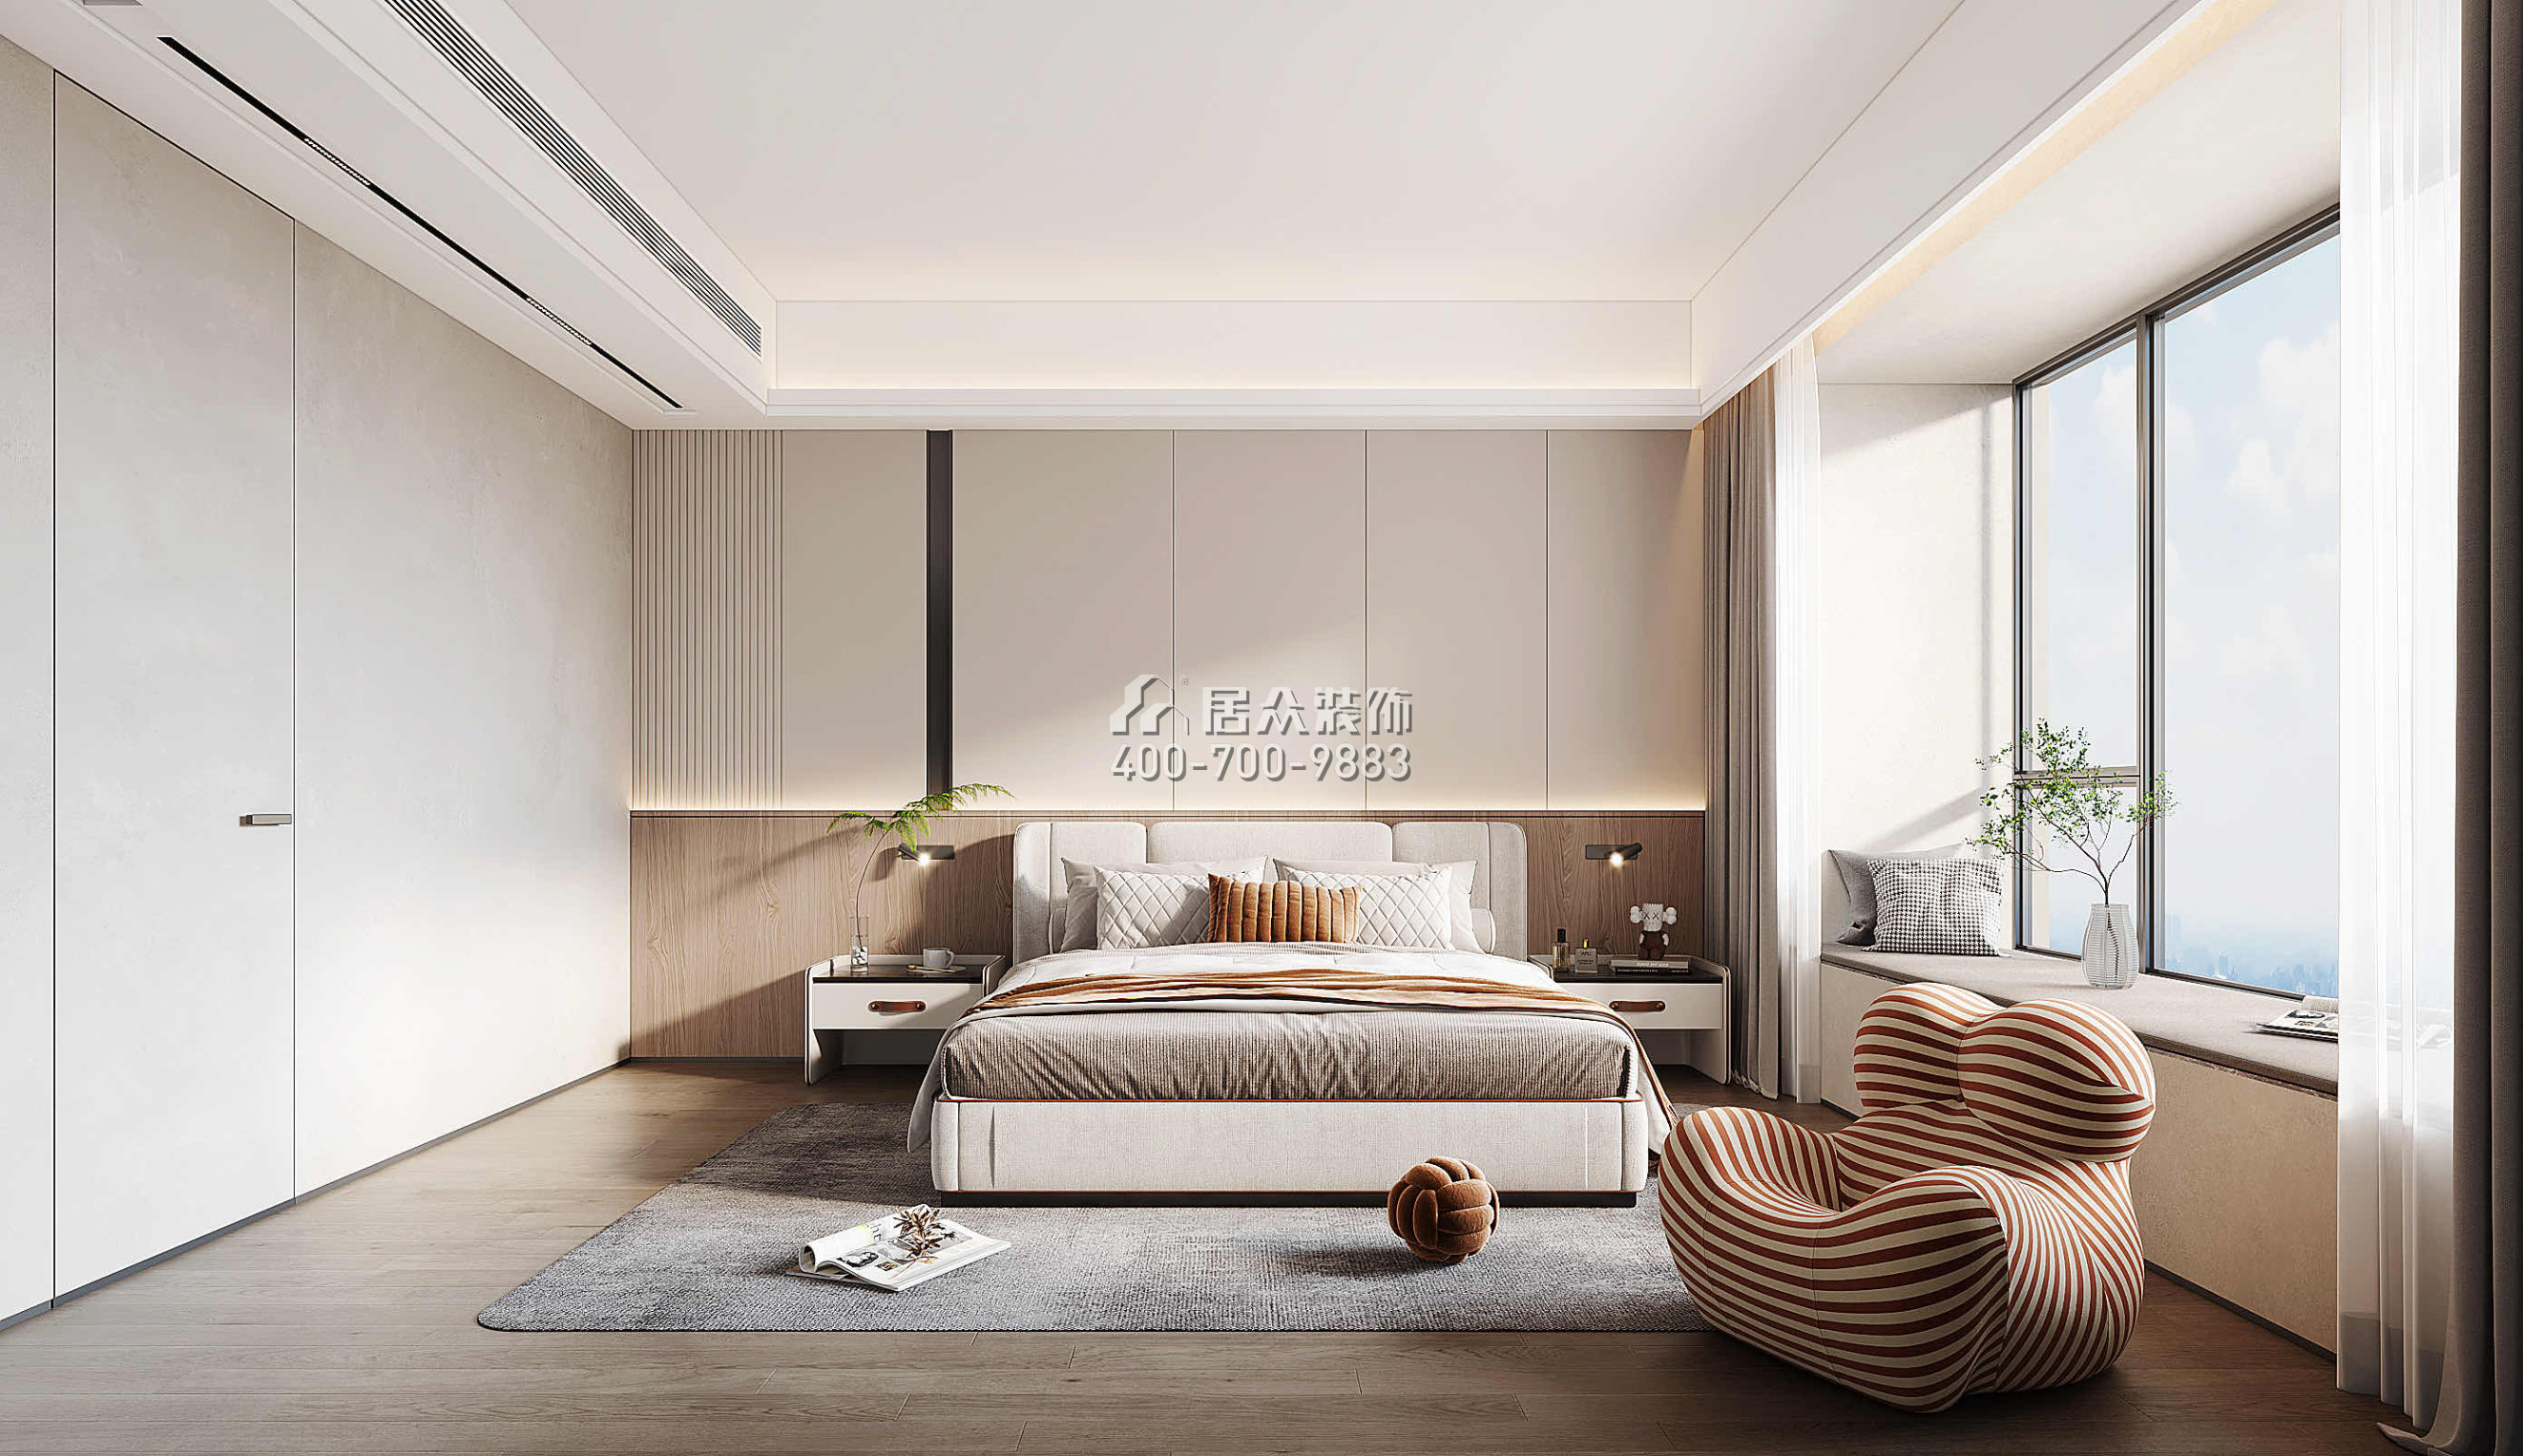 天健天驕南苑210平方米現代簡約風格平層戶型臥室裝修效果圖